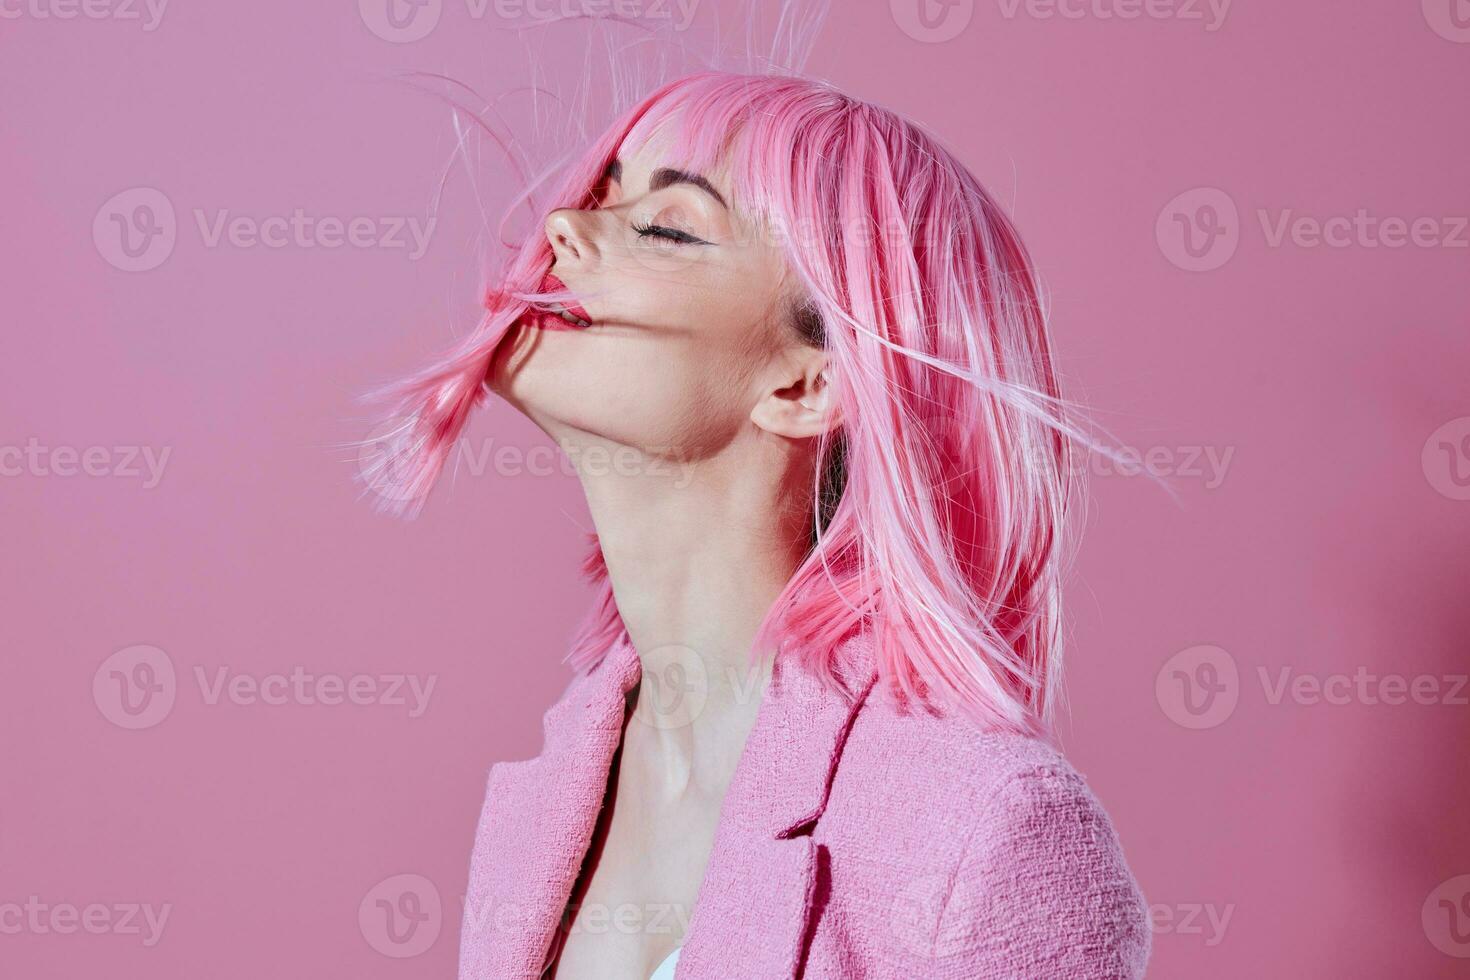 joven mujer rosado chaqueta participación pelo productos cosméticos estudio modelo inalterado foto